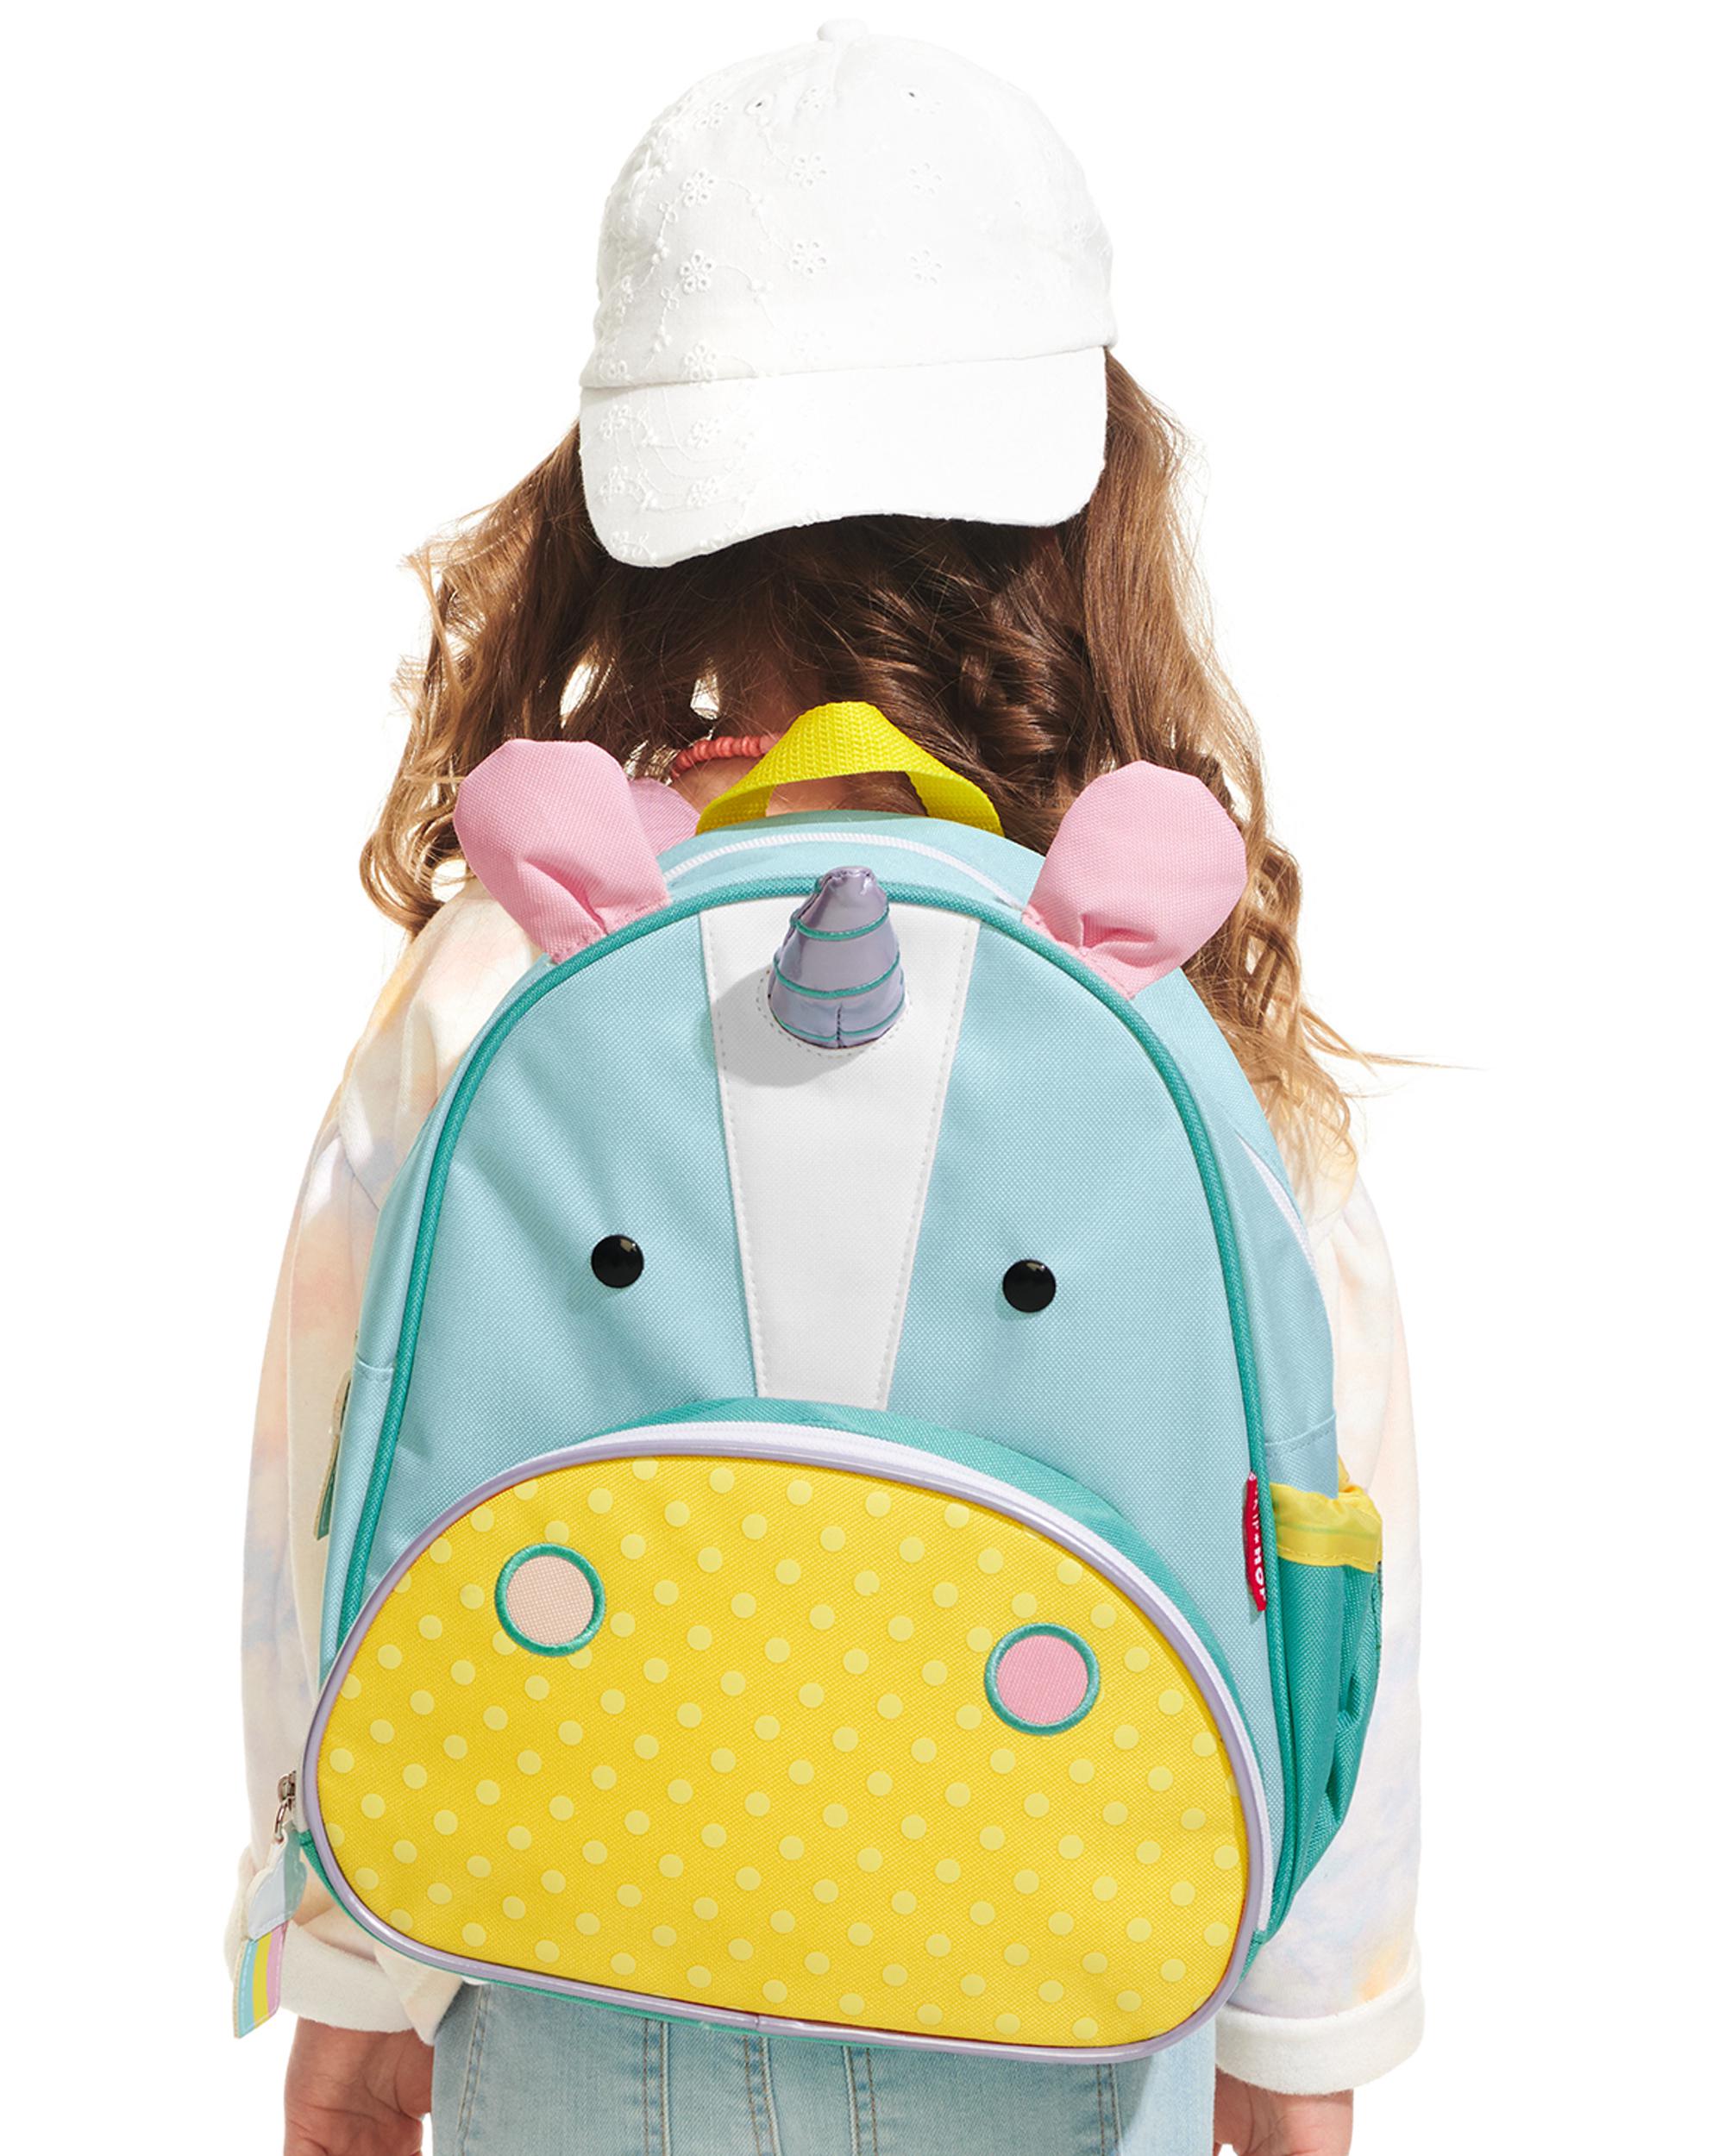 Skip Hop - Zoo Little Kid Backpack - Unicorn-8